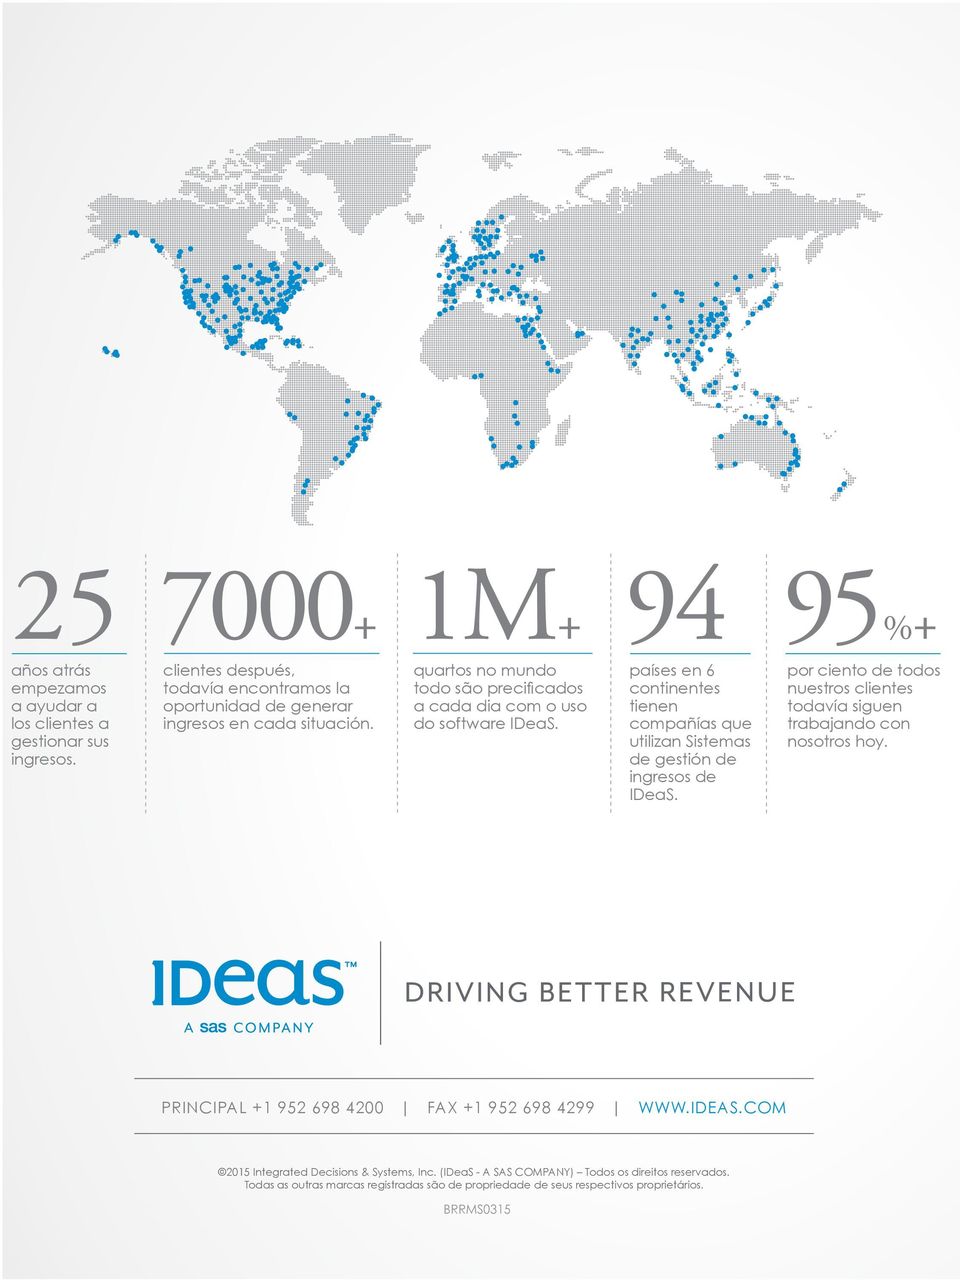 94 países en 6 continentes tienen compañías que utilizan Sistemas de gestión de ingresos de IDeaS.